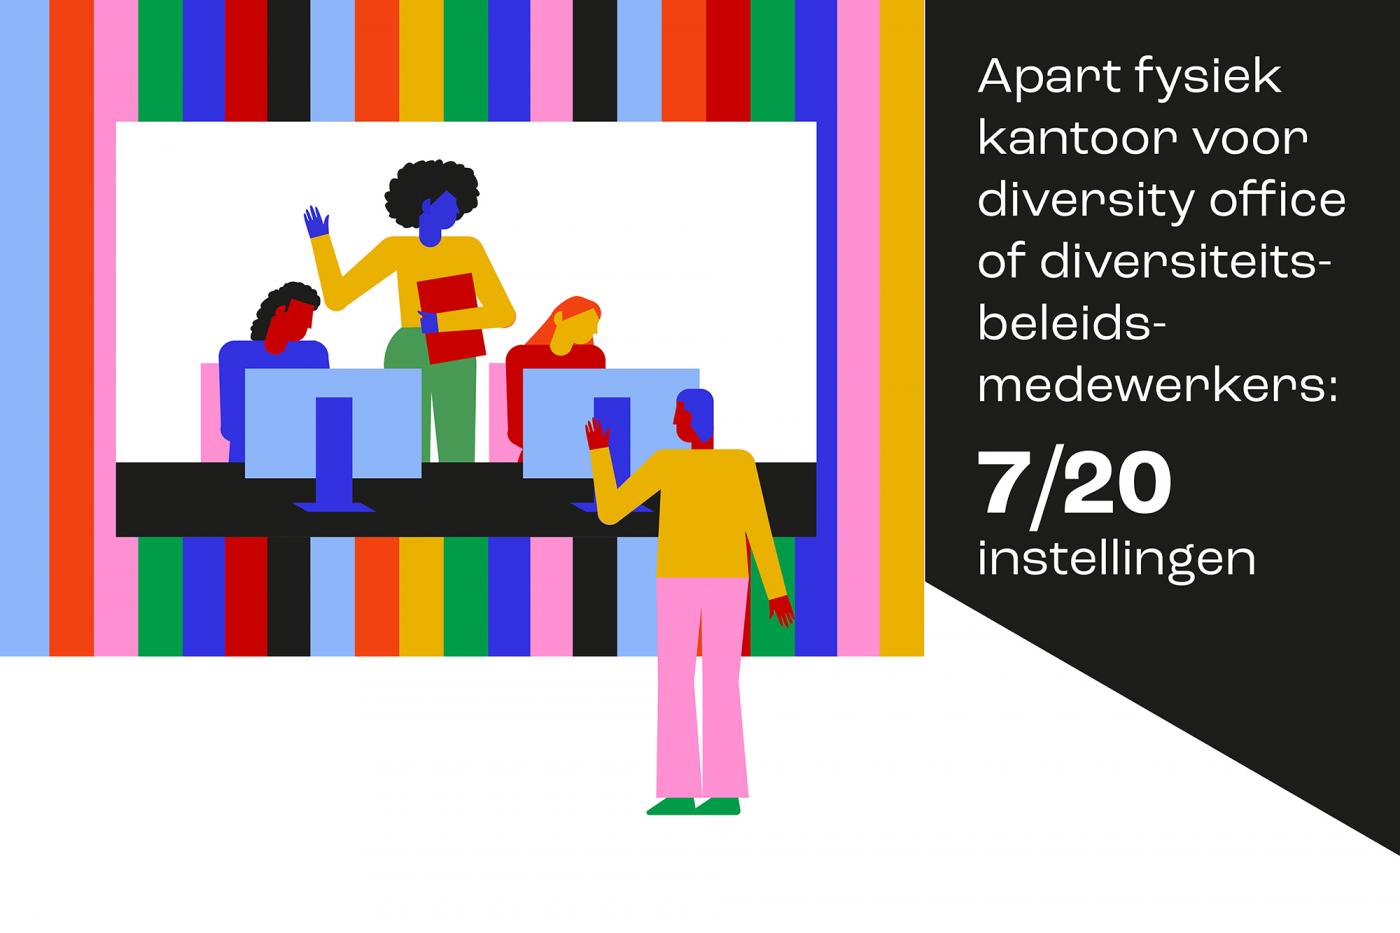 diversiteit: infographic diversity office. Illustratie: Eveline Schram